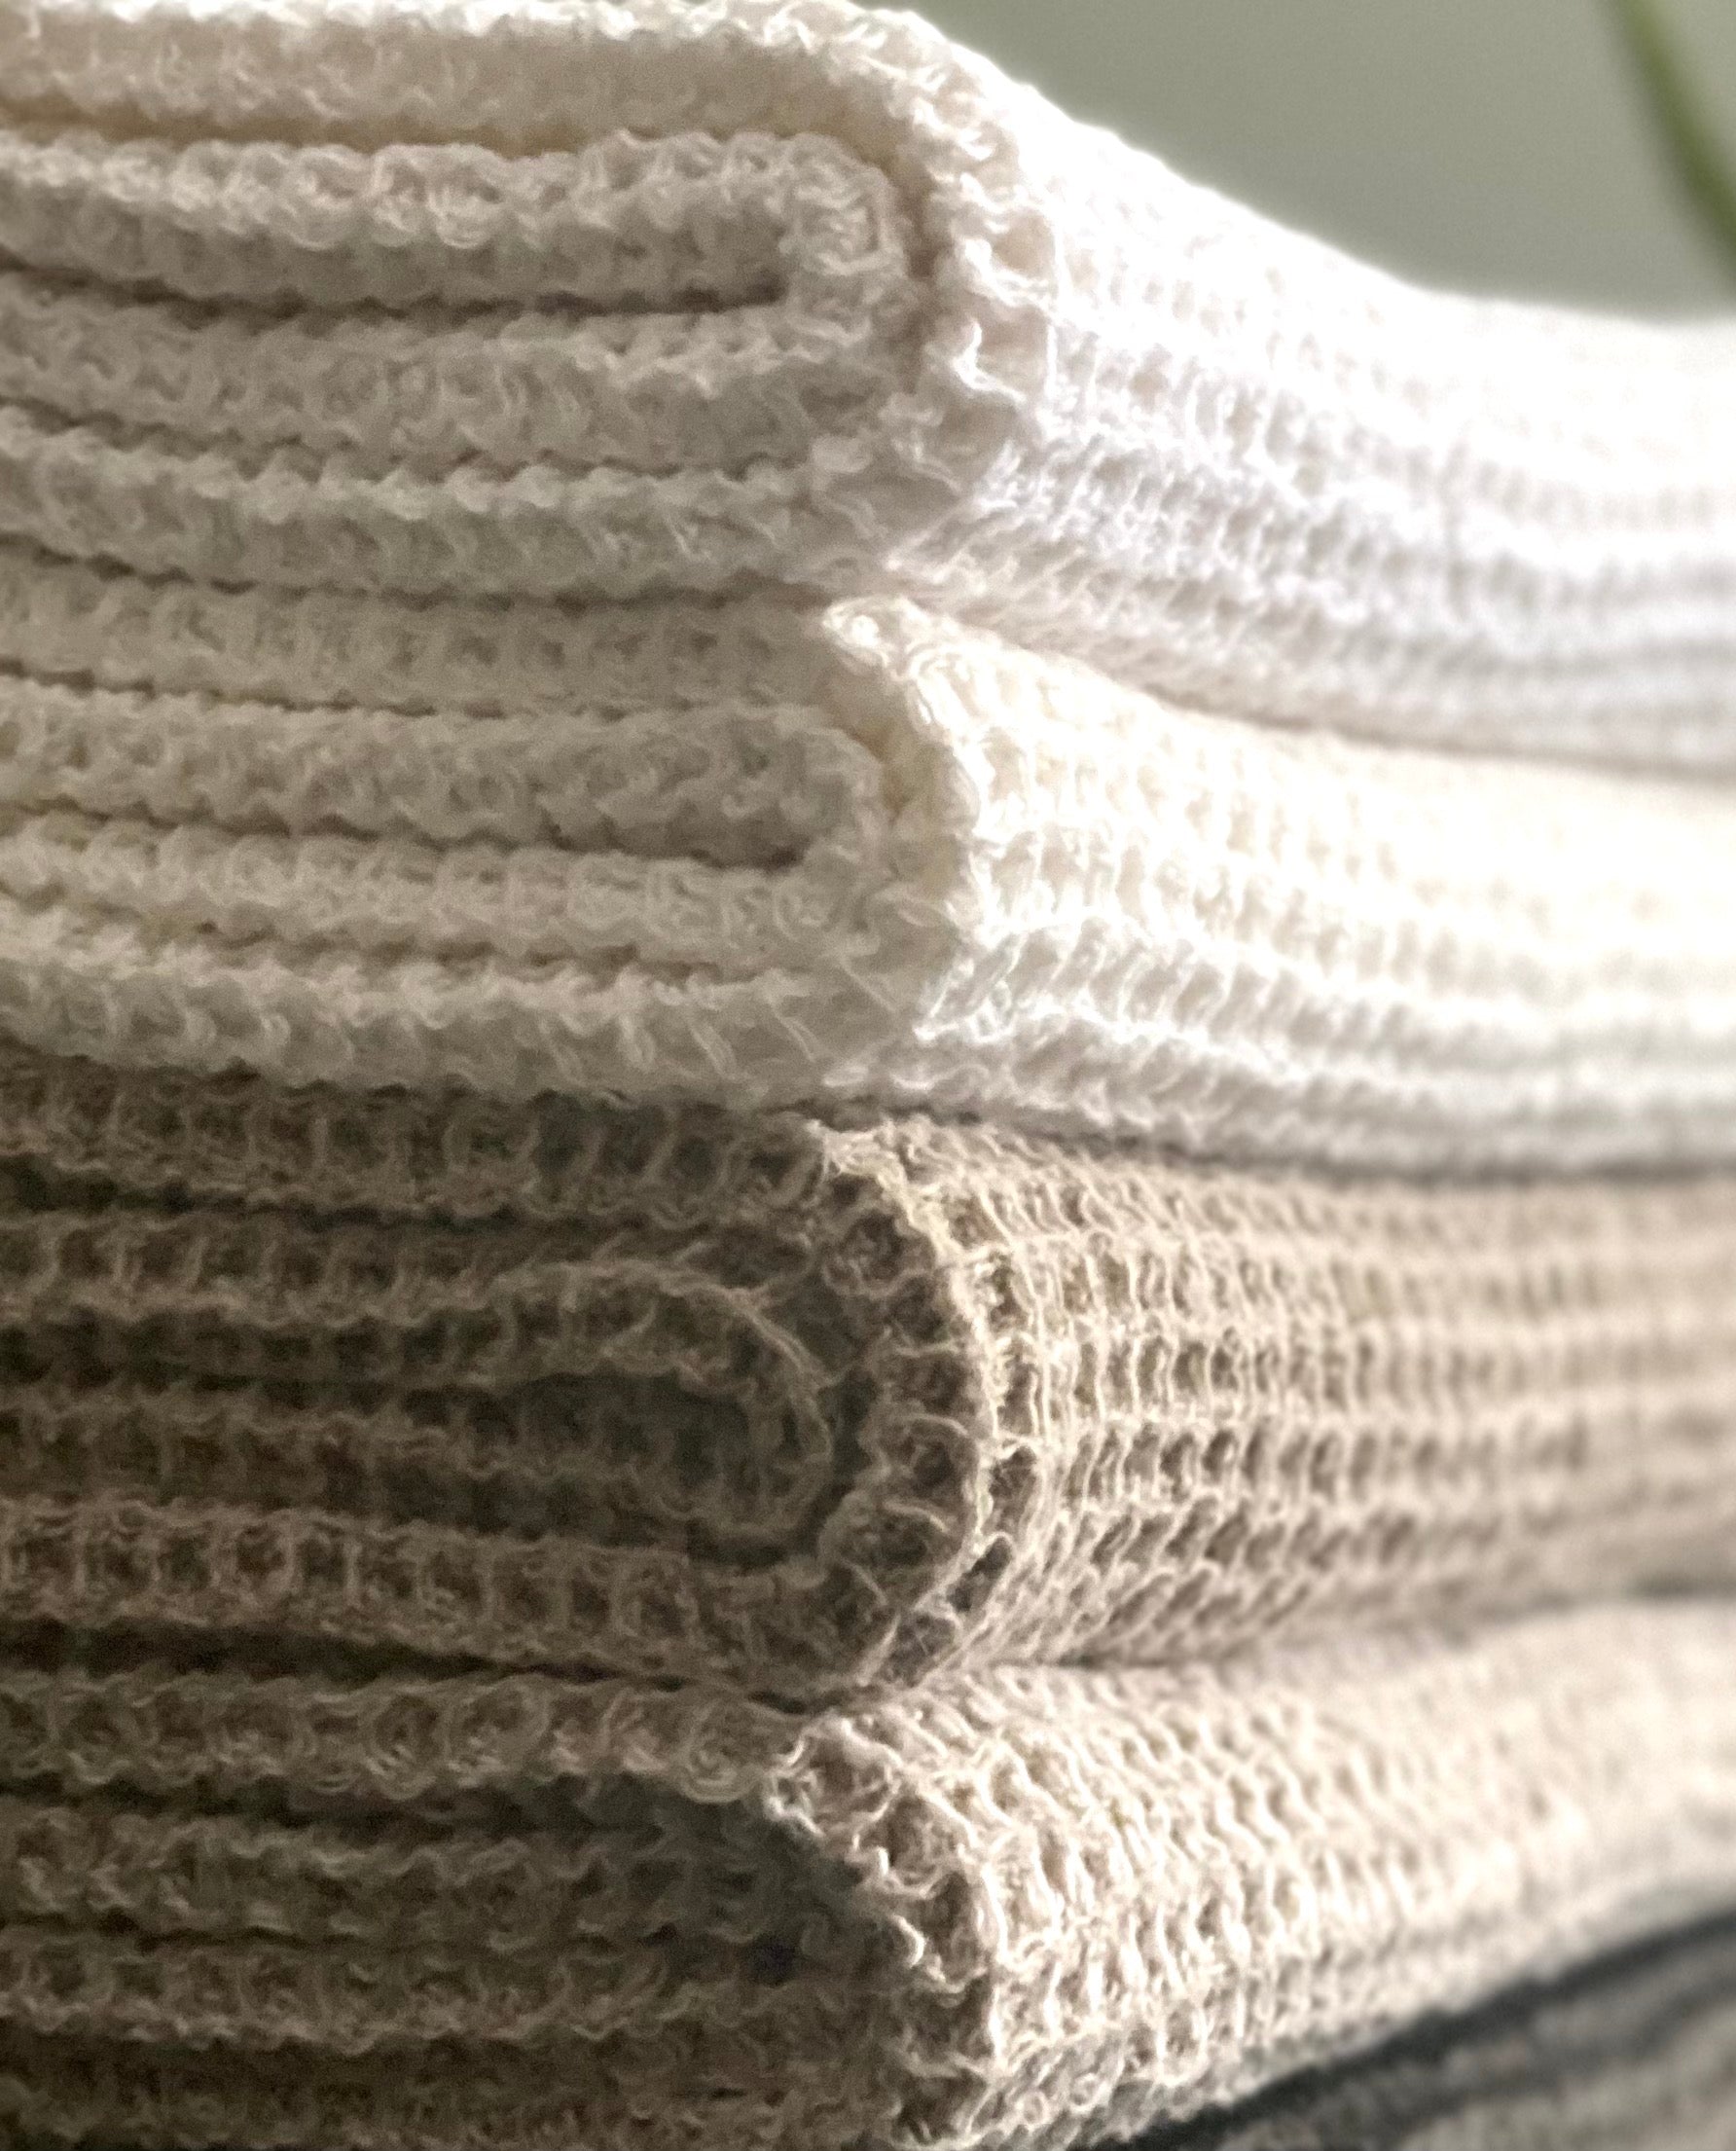 Flax Waffle Hand Towel – Old World Linen